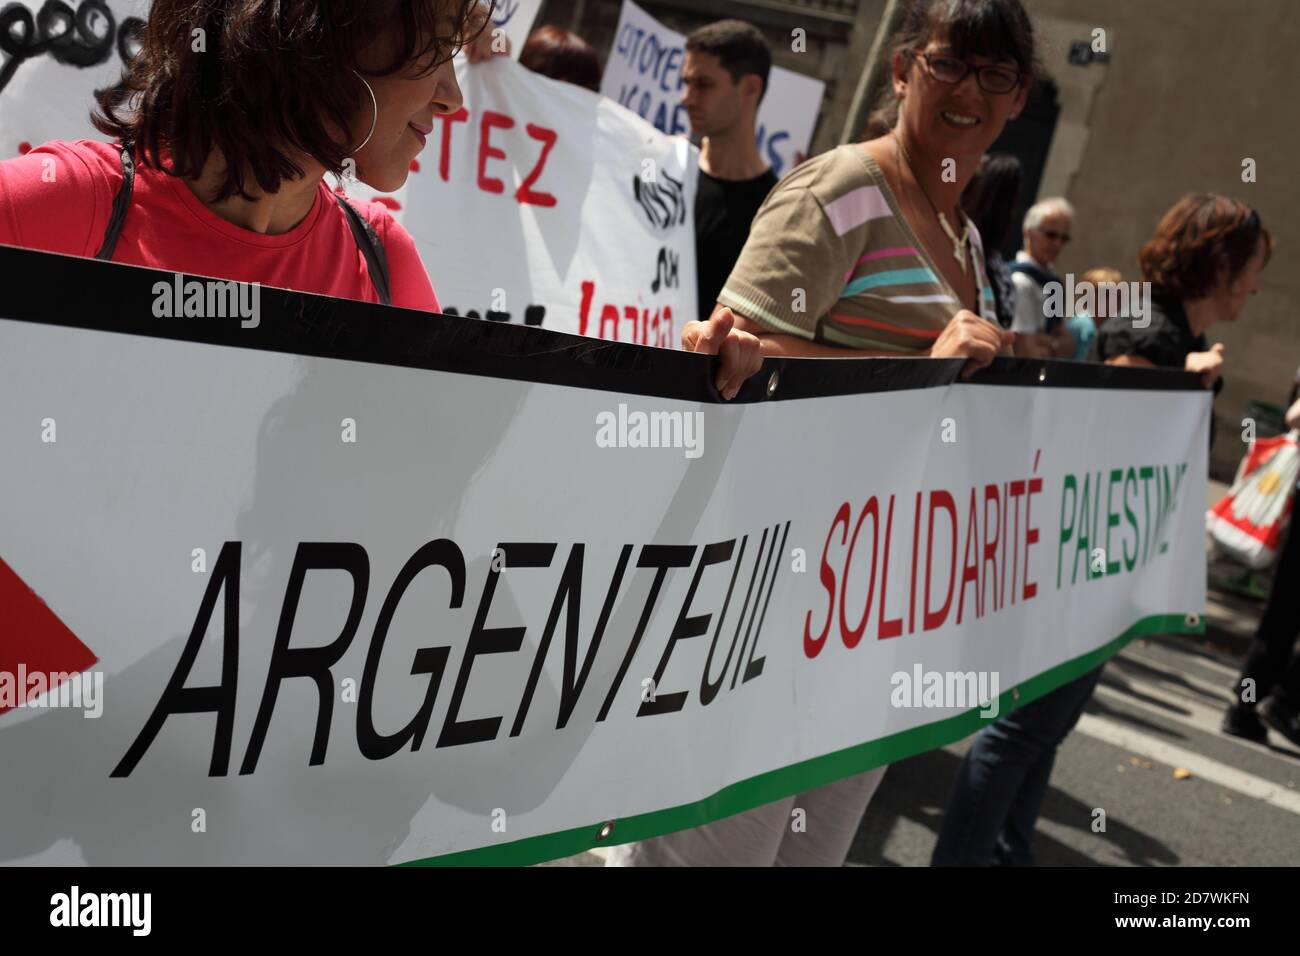 Manifestation pro-palestinienne à Paris en faveur du peuple de Gaza à la suite de l'offensive israélienne qui a coûté la vie à 1,600 personnes Palestiniens Banque D'Images